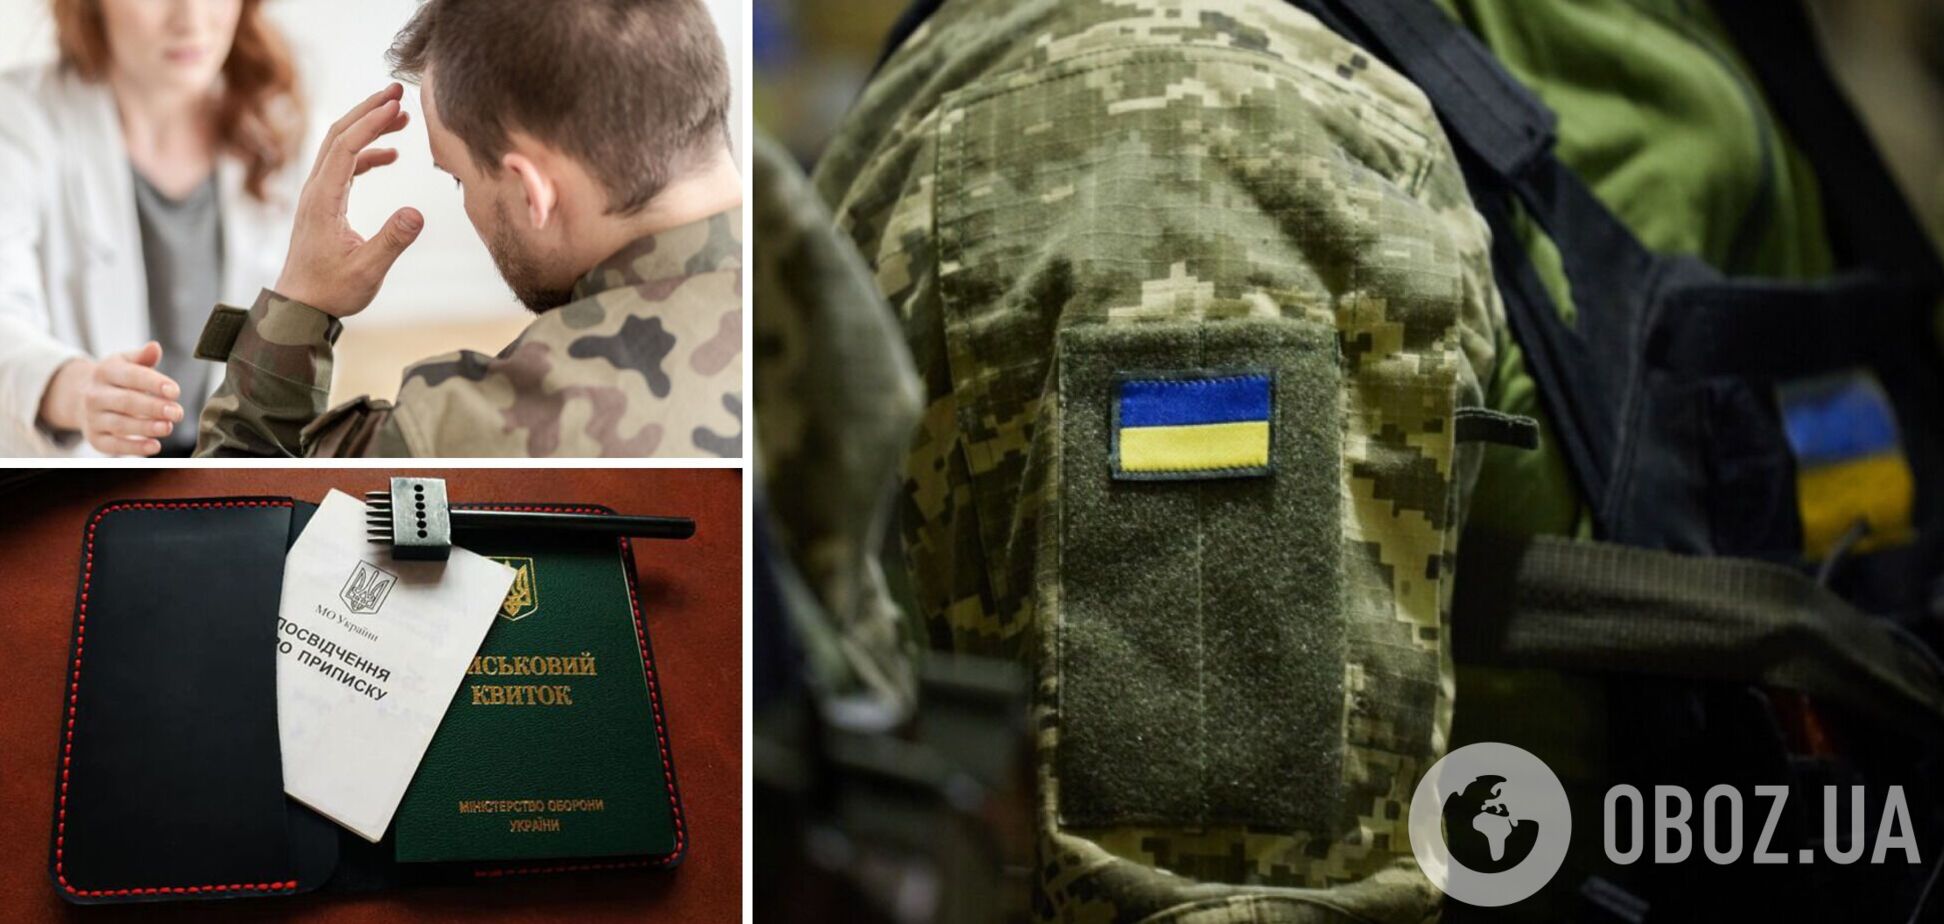 Де можуть служити обмежено придатні під час воєнного стану в Україні: роз'яснення 